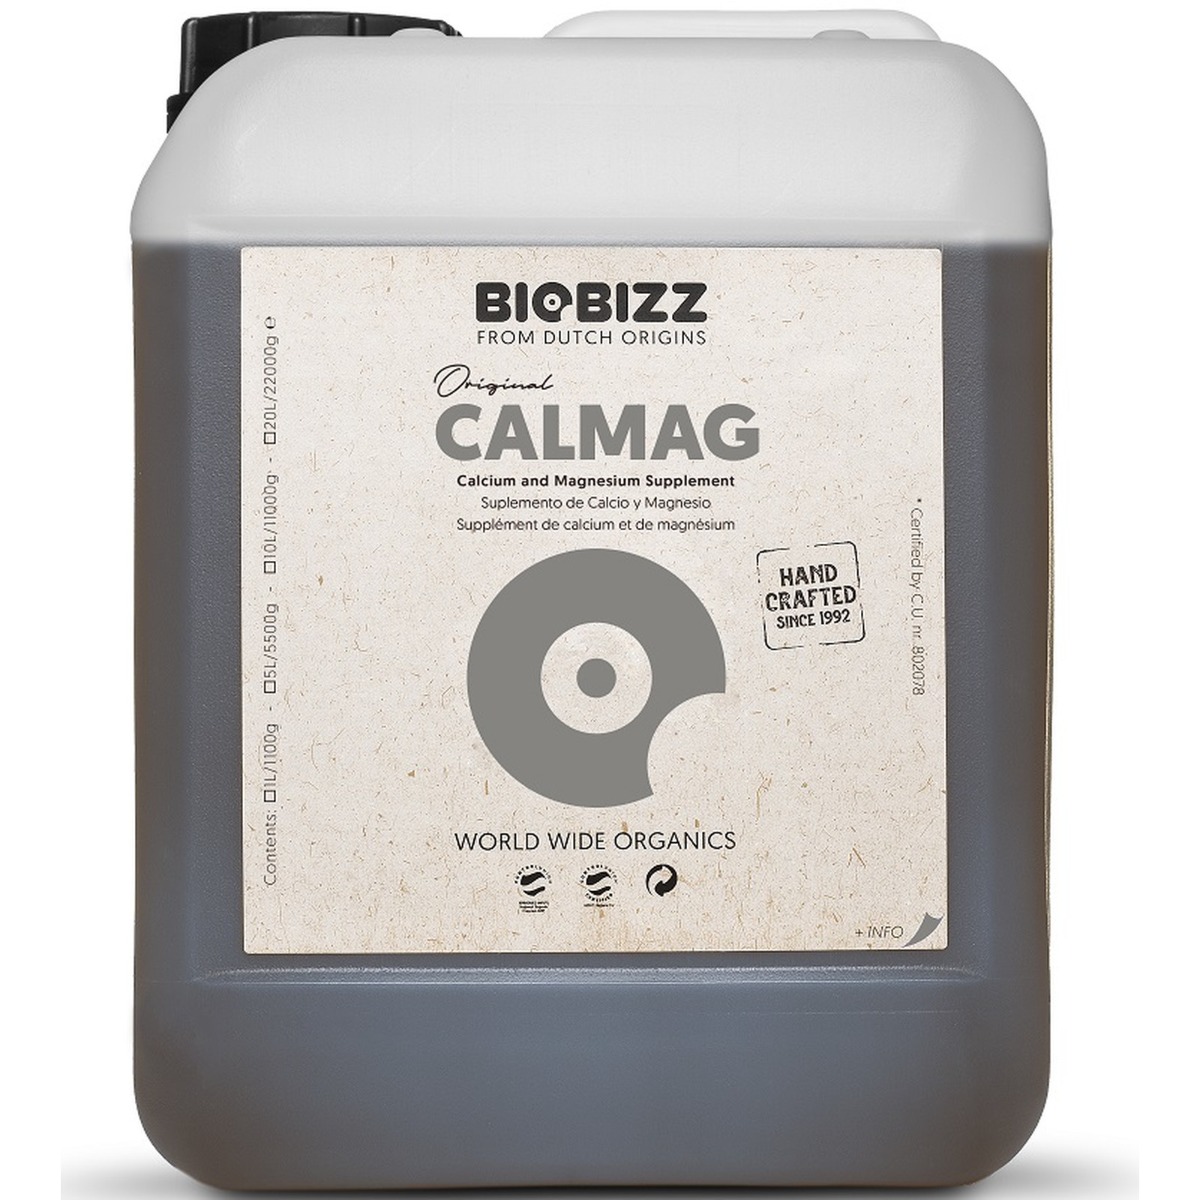 CALMAG Calcium & Magnesium Supplement 5lt